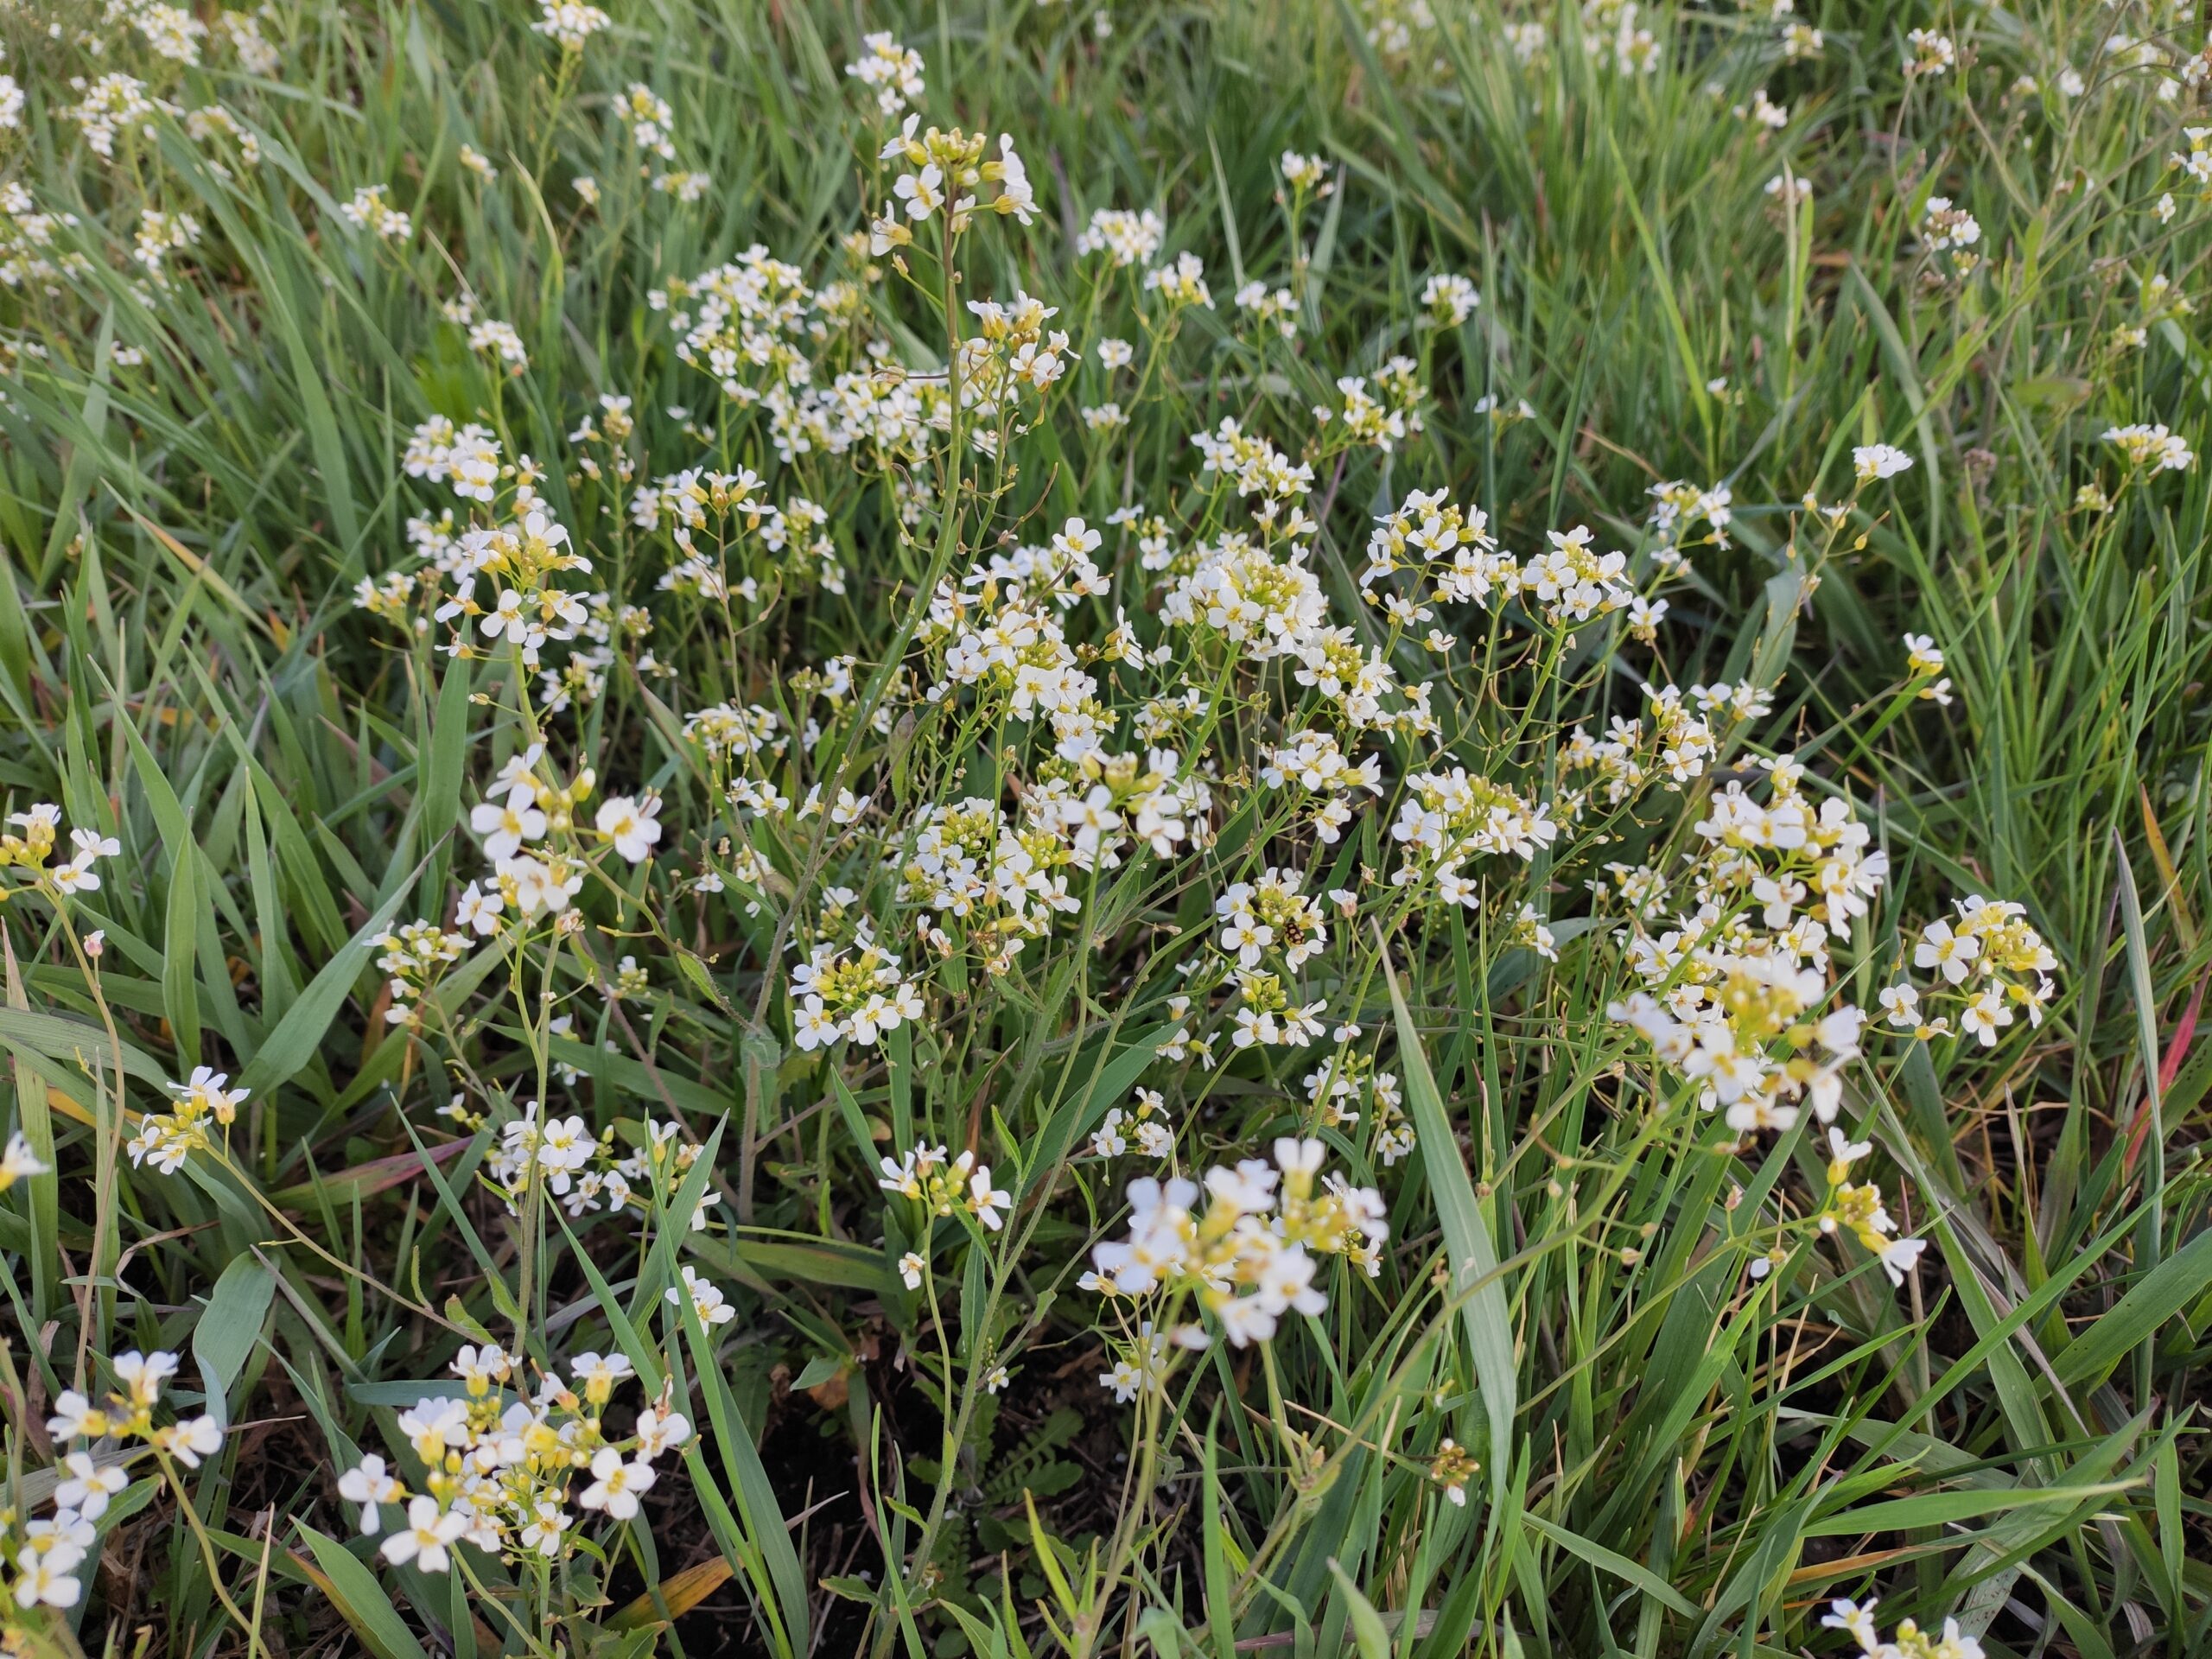 Z niskiej trawy wyłaniają się drobne białe kwiatostany rzeżuchy łąkowej.